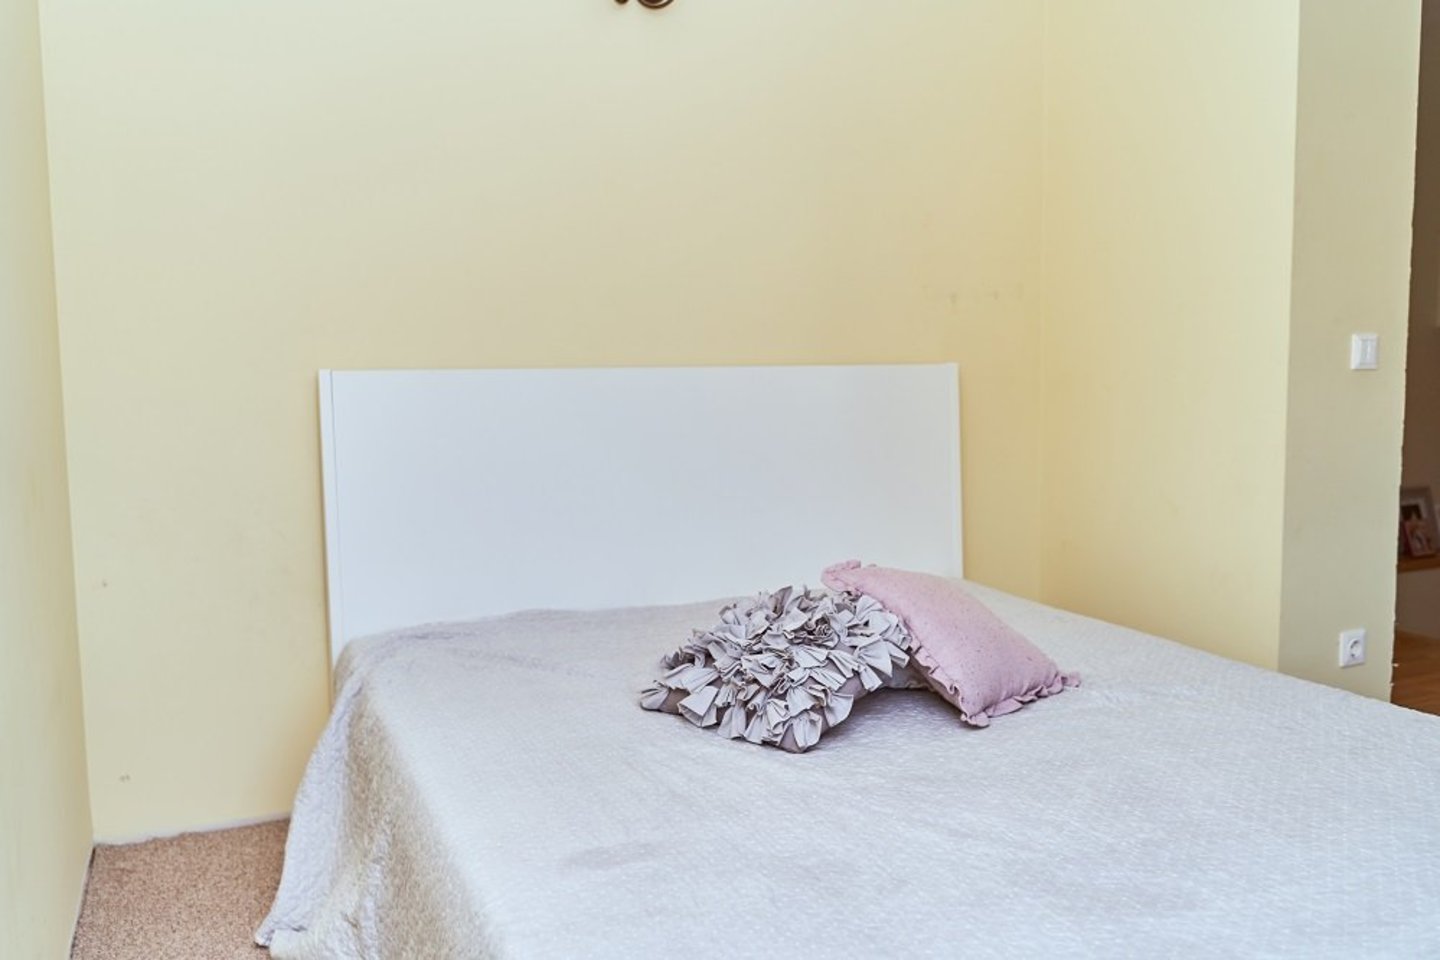 Miegamasis tarnauja dviem funkcijoms: miegamojo ir drabužinės, tad teko ieškoti sprendimų, kaip palėpę paversti jaukia erdve poilsiui bei talpia vieta laikyti poros drabužiams bei asmeniniams daiktams.<br>„Ikea“ nuotr.